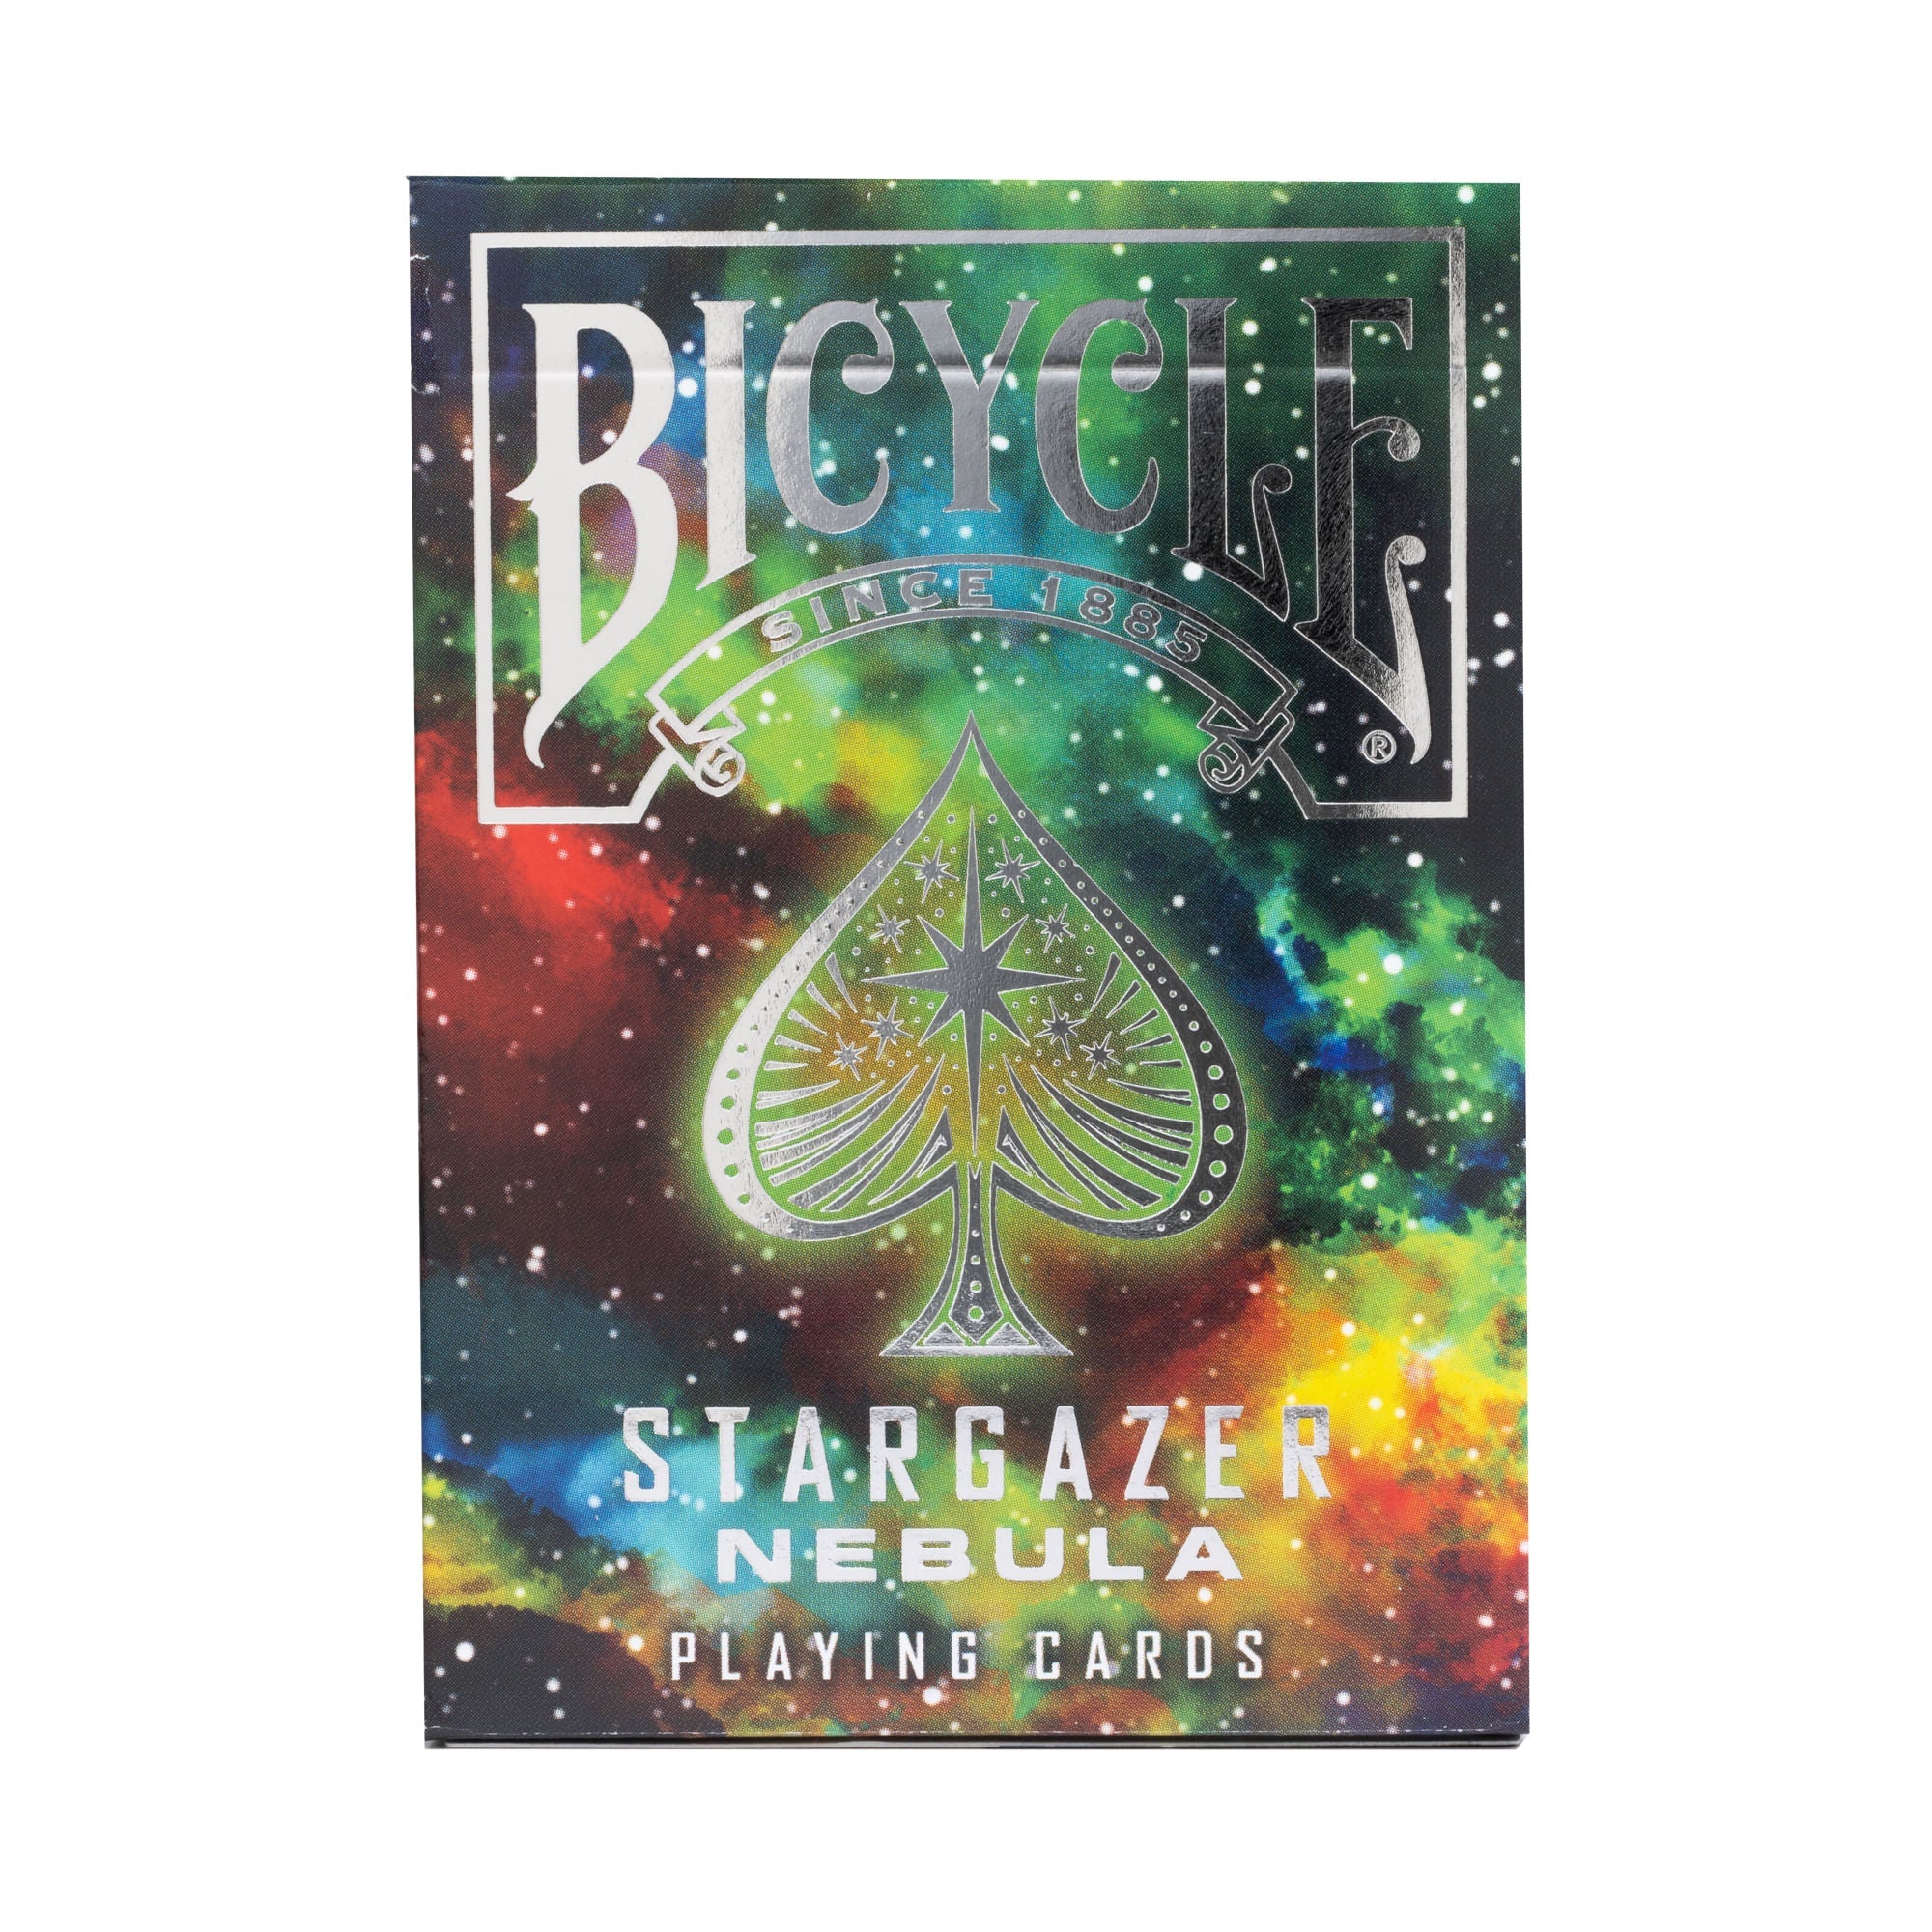 Bicycle Stargazer Nebula Playing Cards-United States Playing Cards Company-Ace Cards & Collectibles